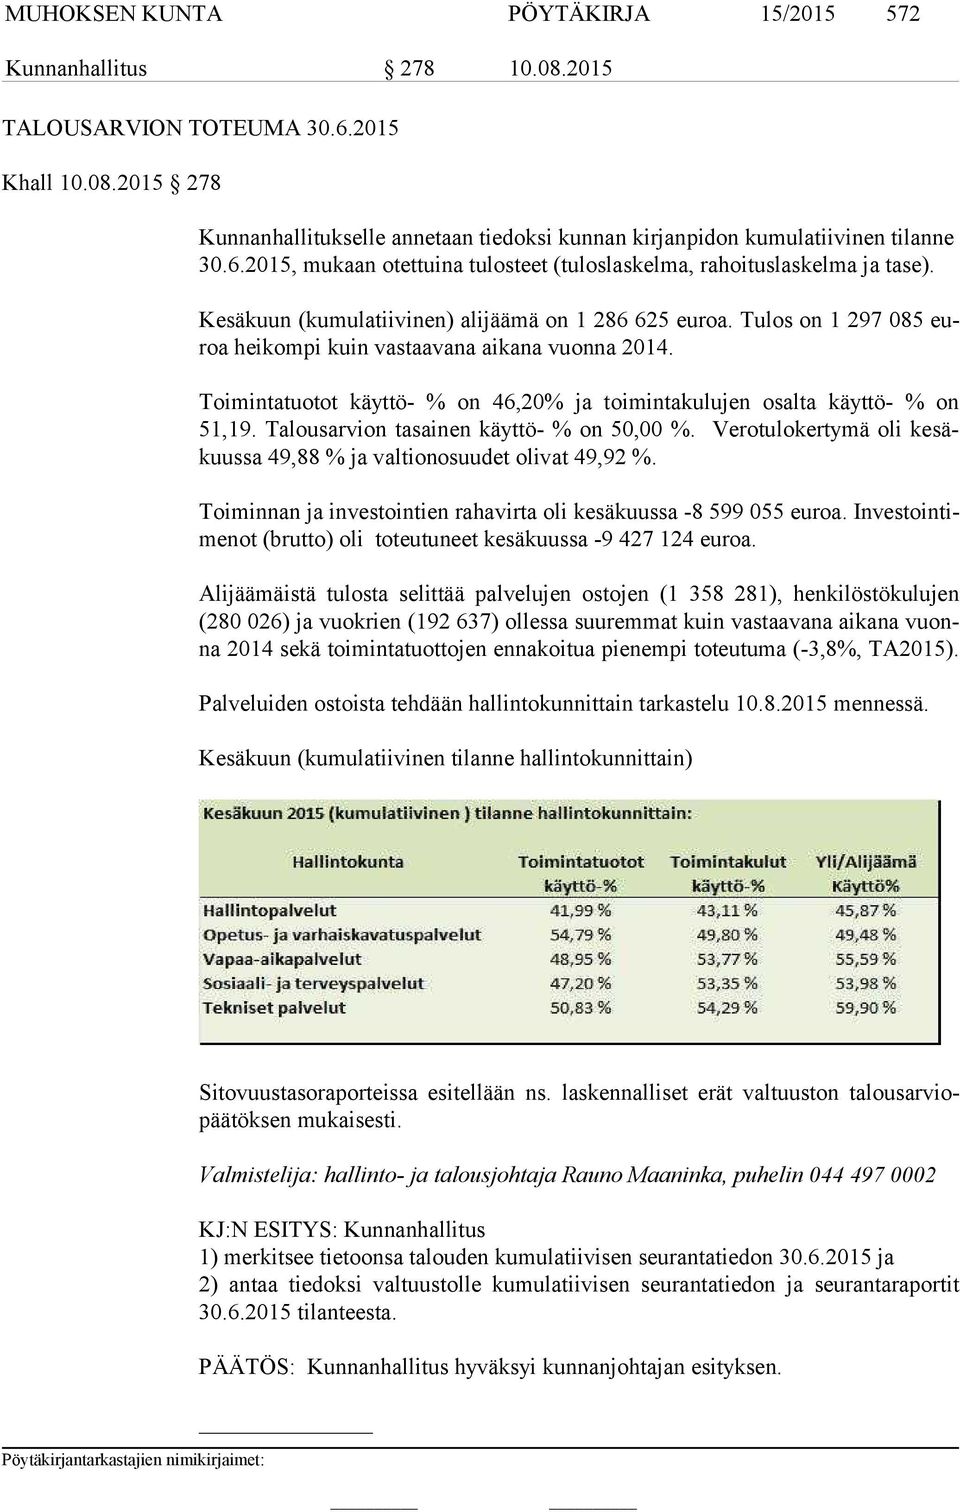 Tulos on 1 297 085 euroa heikompi kuin vastaavana aikana vuonna 2014. Toimintatuotot käyttö- % on 46,20% ja toimintakulujen osalta käyttö- % on 51,19. Talousarvion tasainen käyttö- % on 50,00 %.